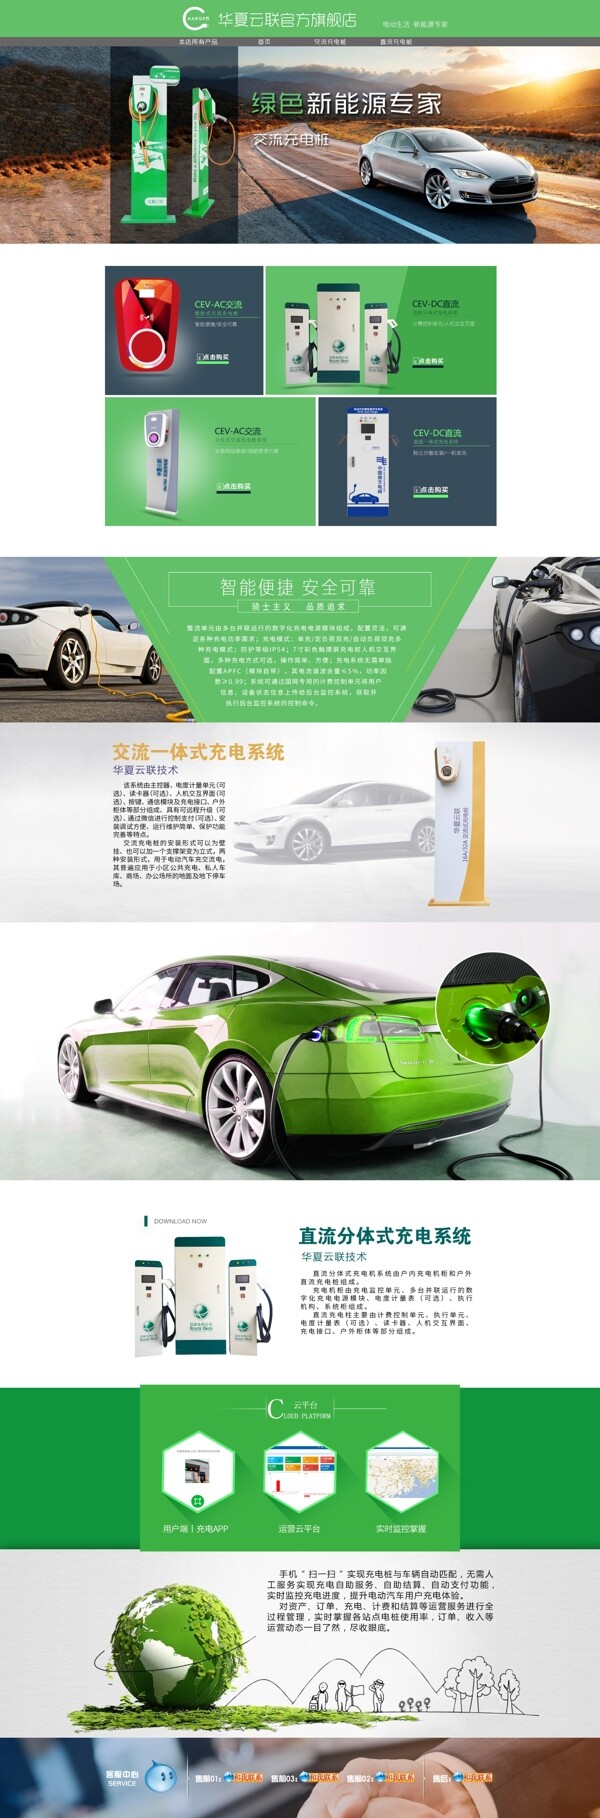 充电桩首页绿色科技环保产品首页